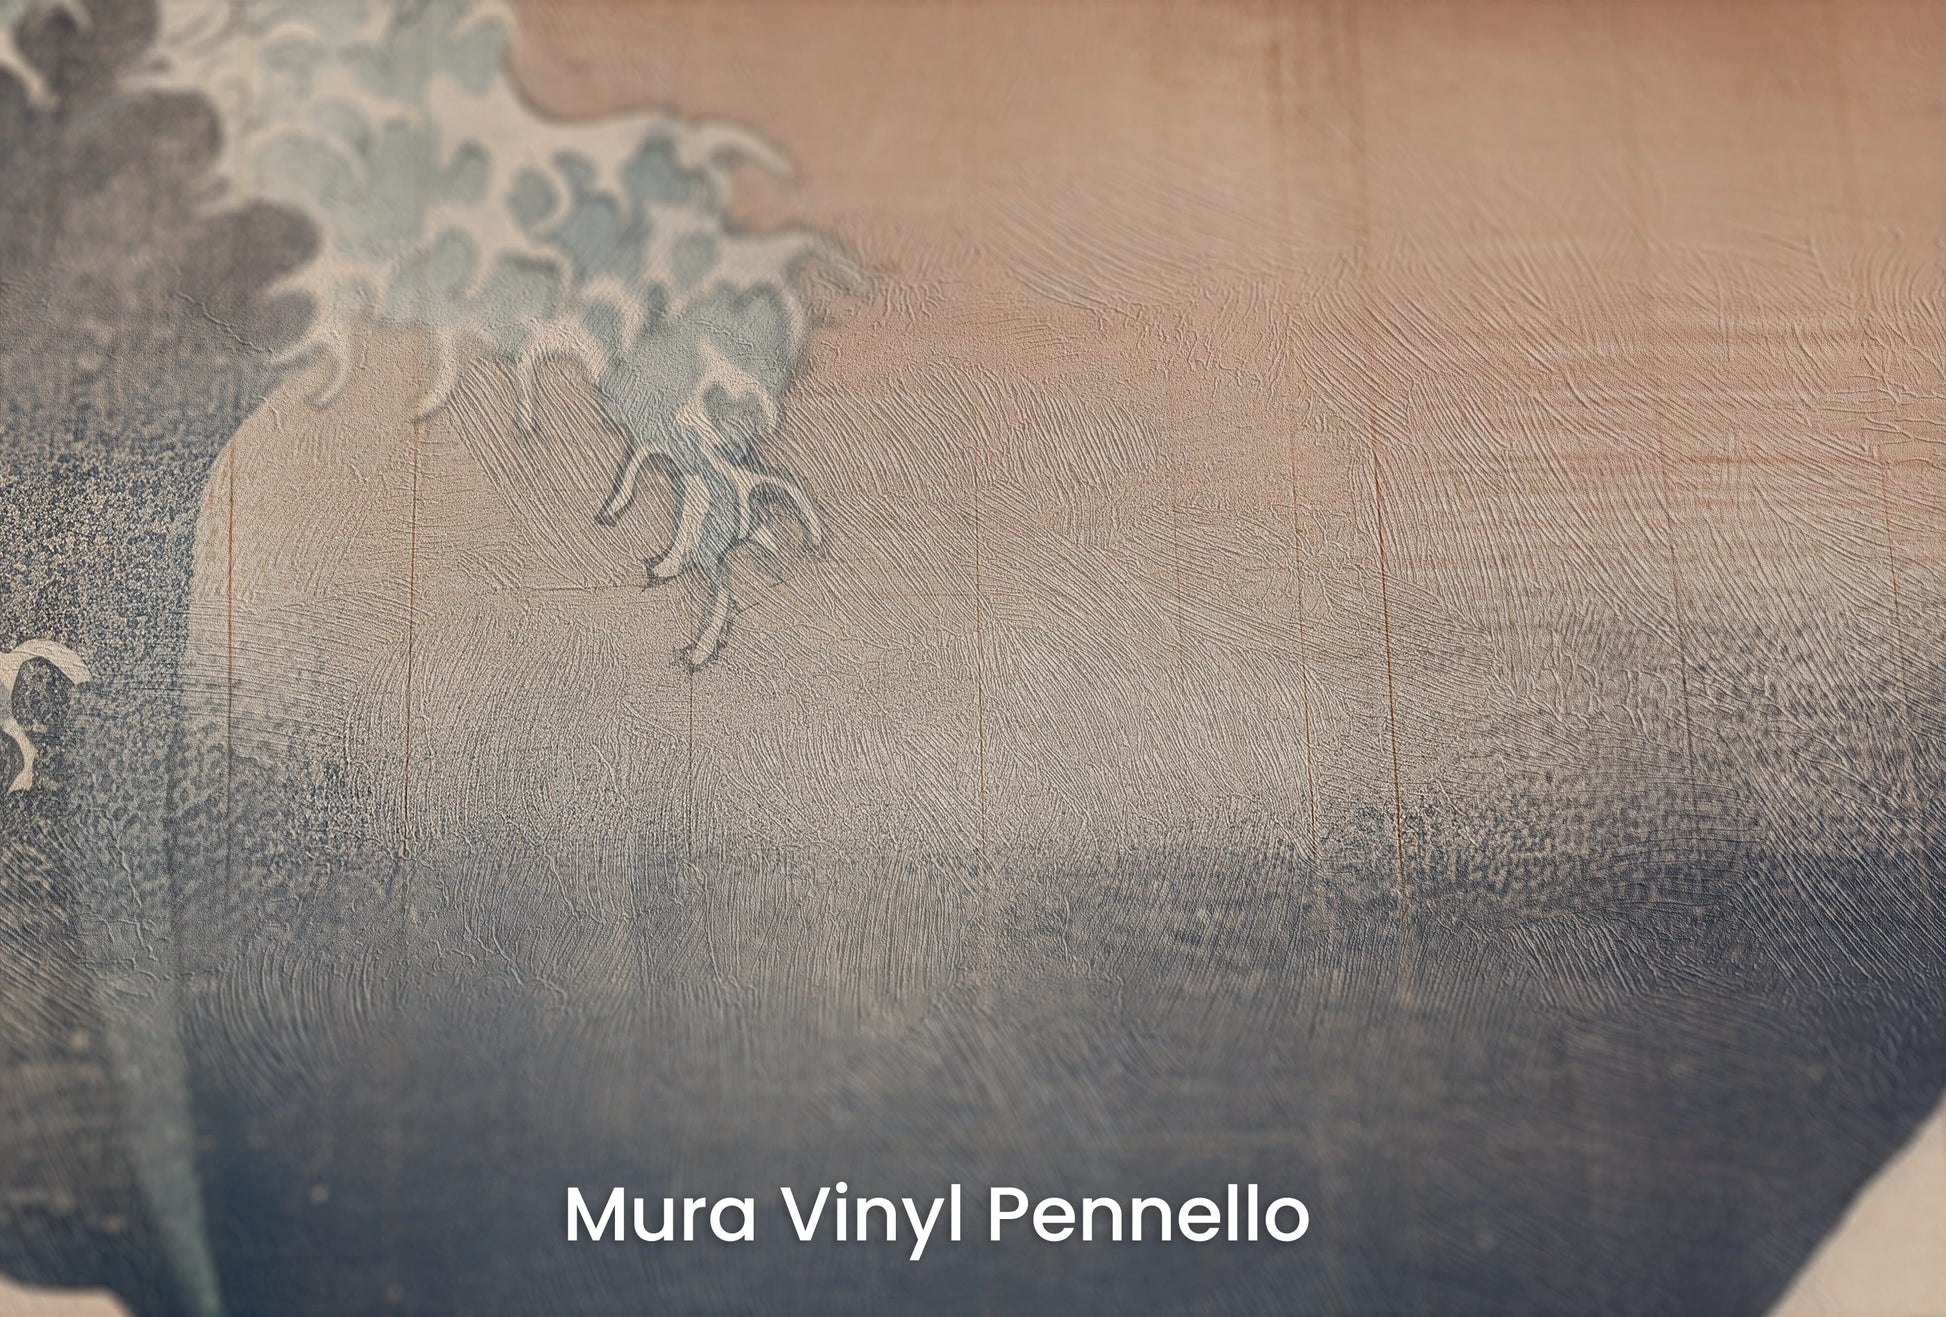 Zbliżenie na artystyczną fototapetę o nazwie Red Sun Tsunami na podłożu Mura Vinyl Pennello - faktura pociągnięć pędzla malarskiego.